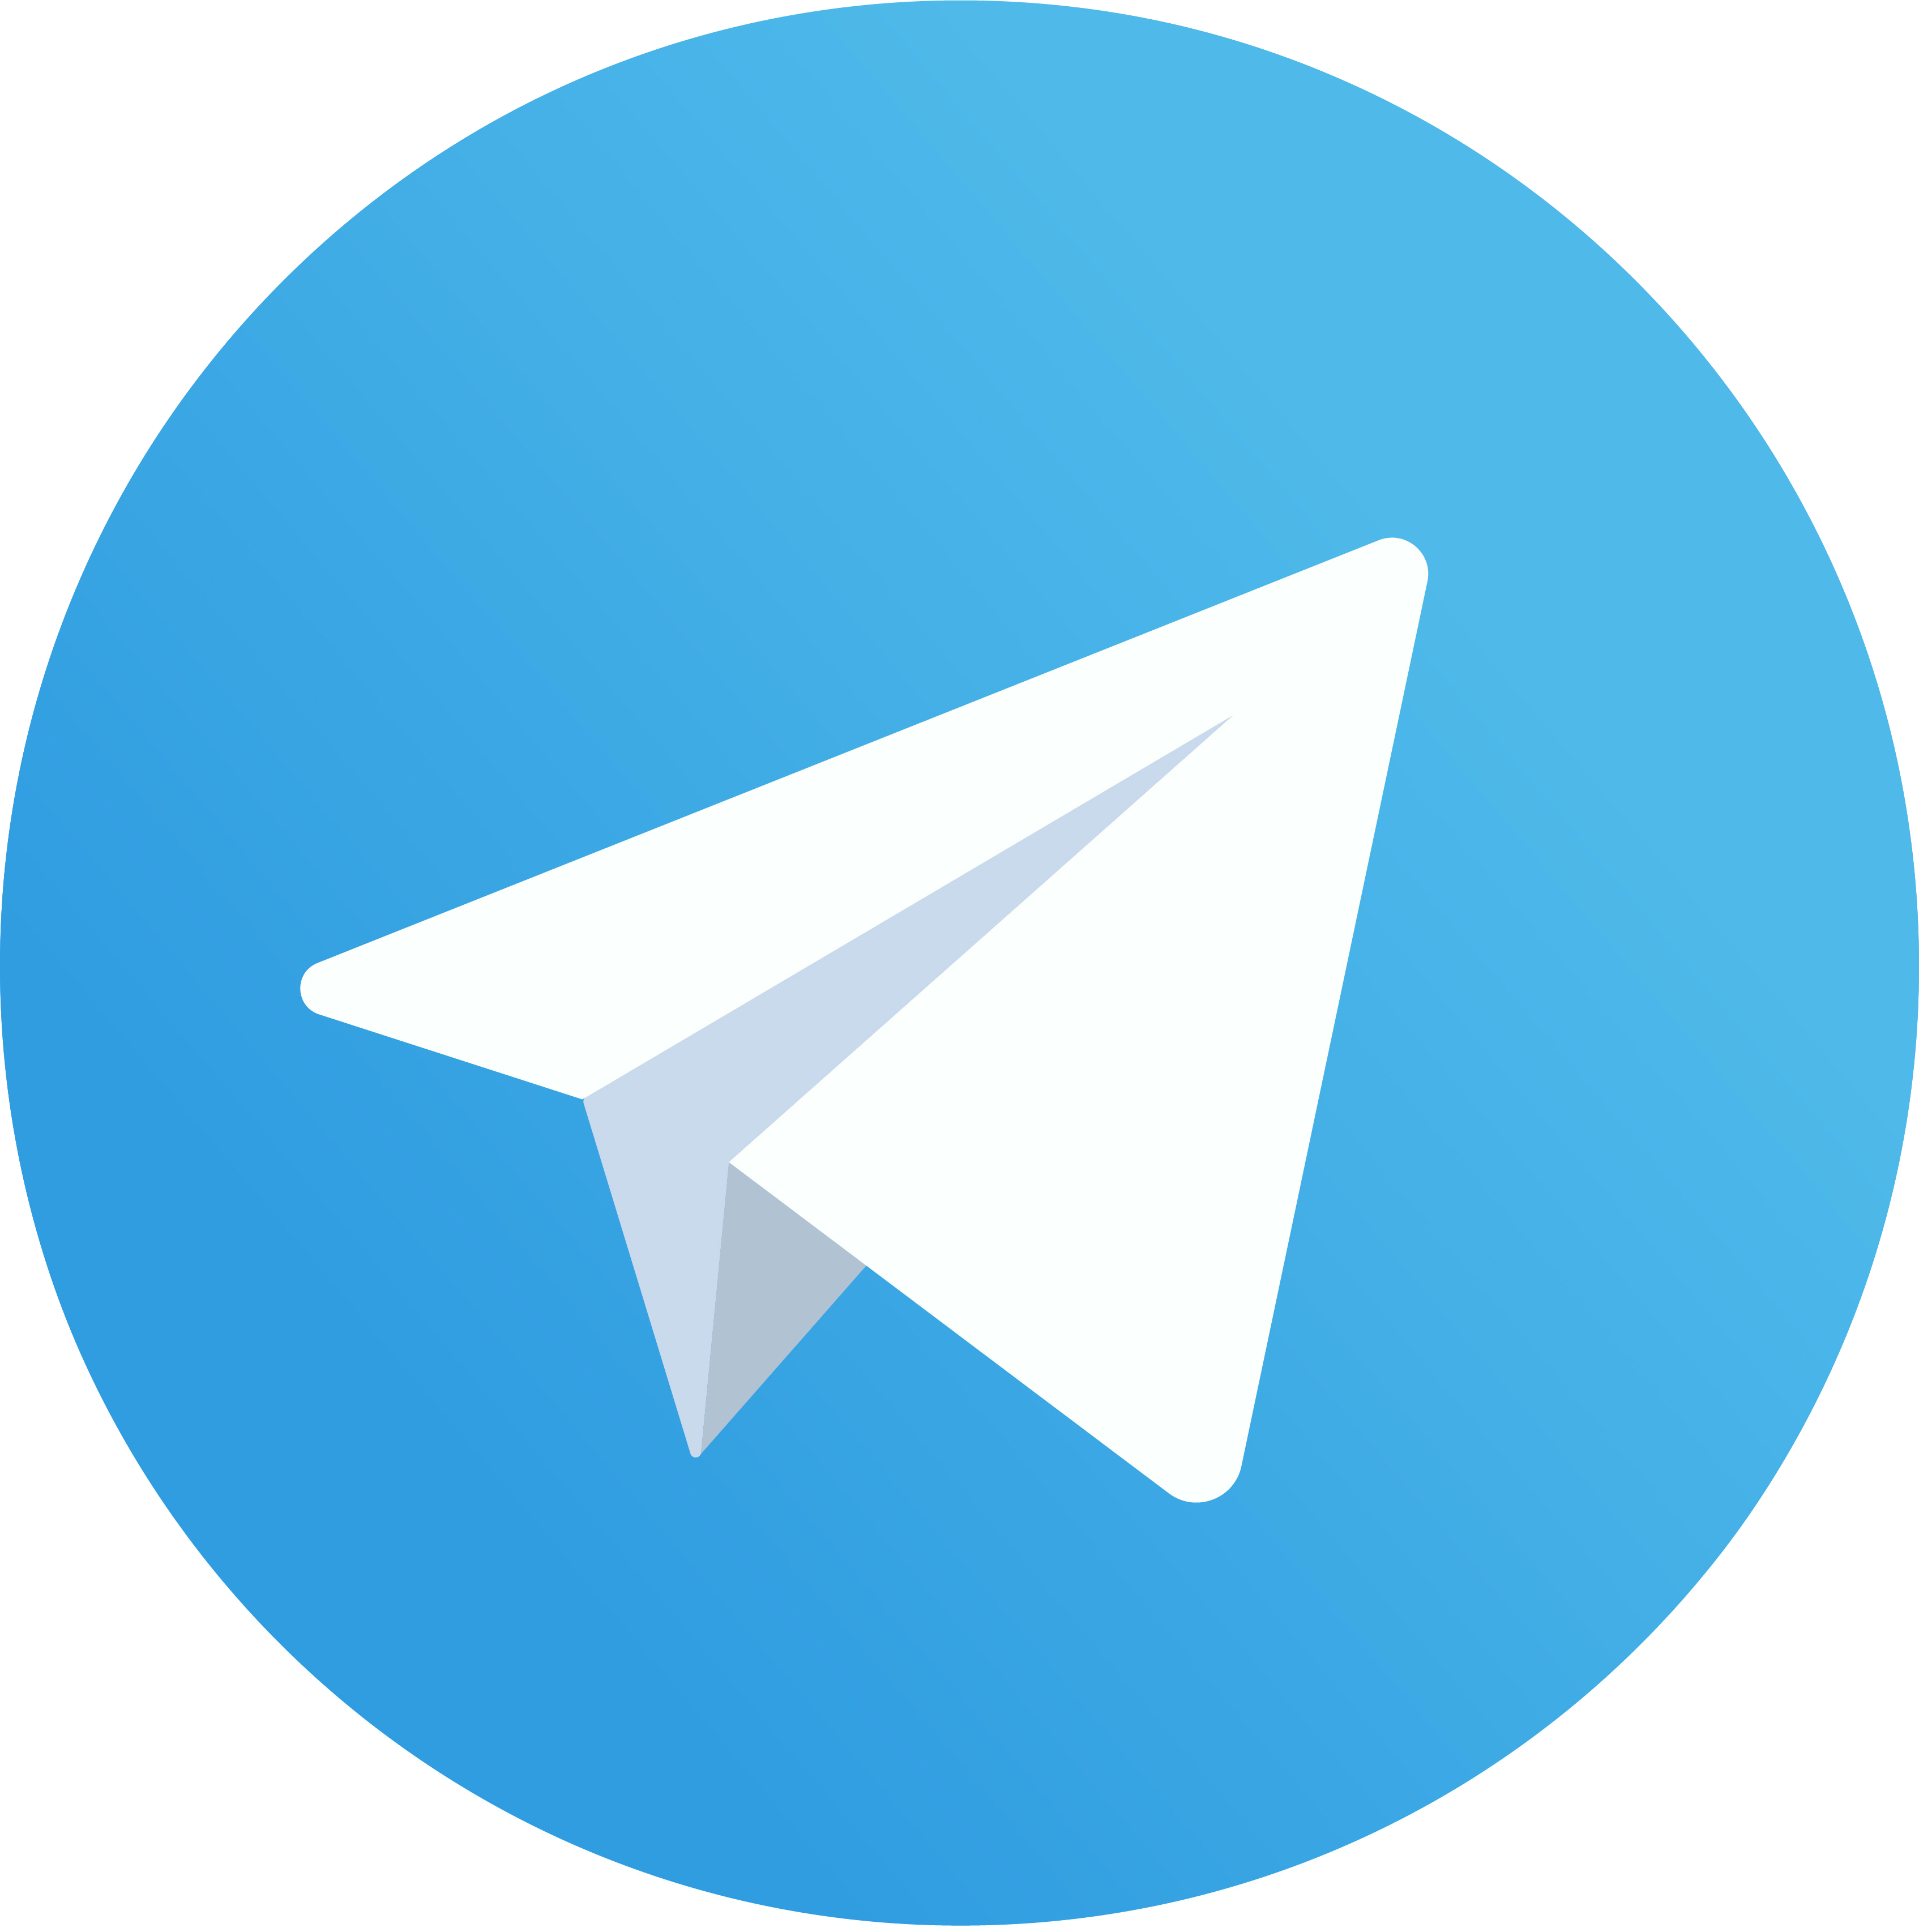 Анонсы мероприятий и работающие советы для бизнеса — в нашем Telegram-канале